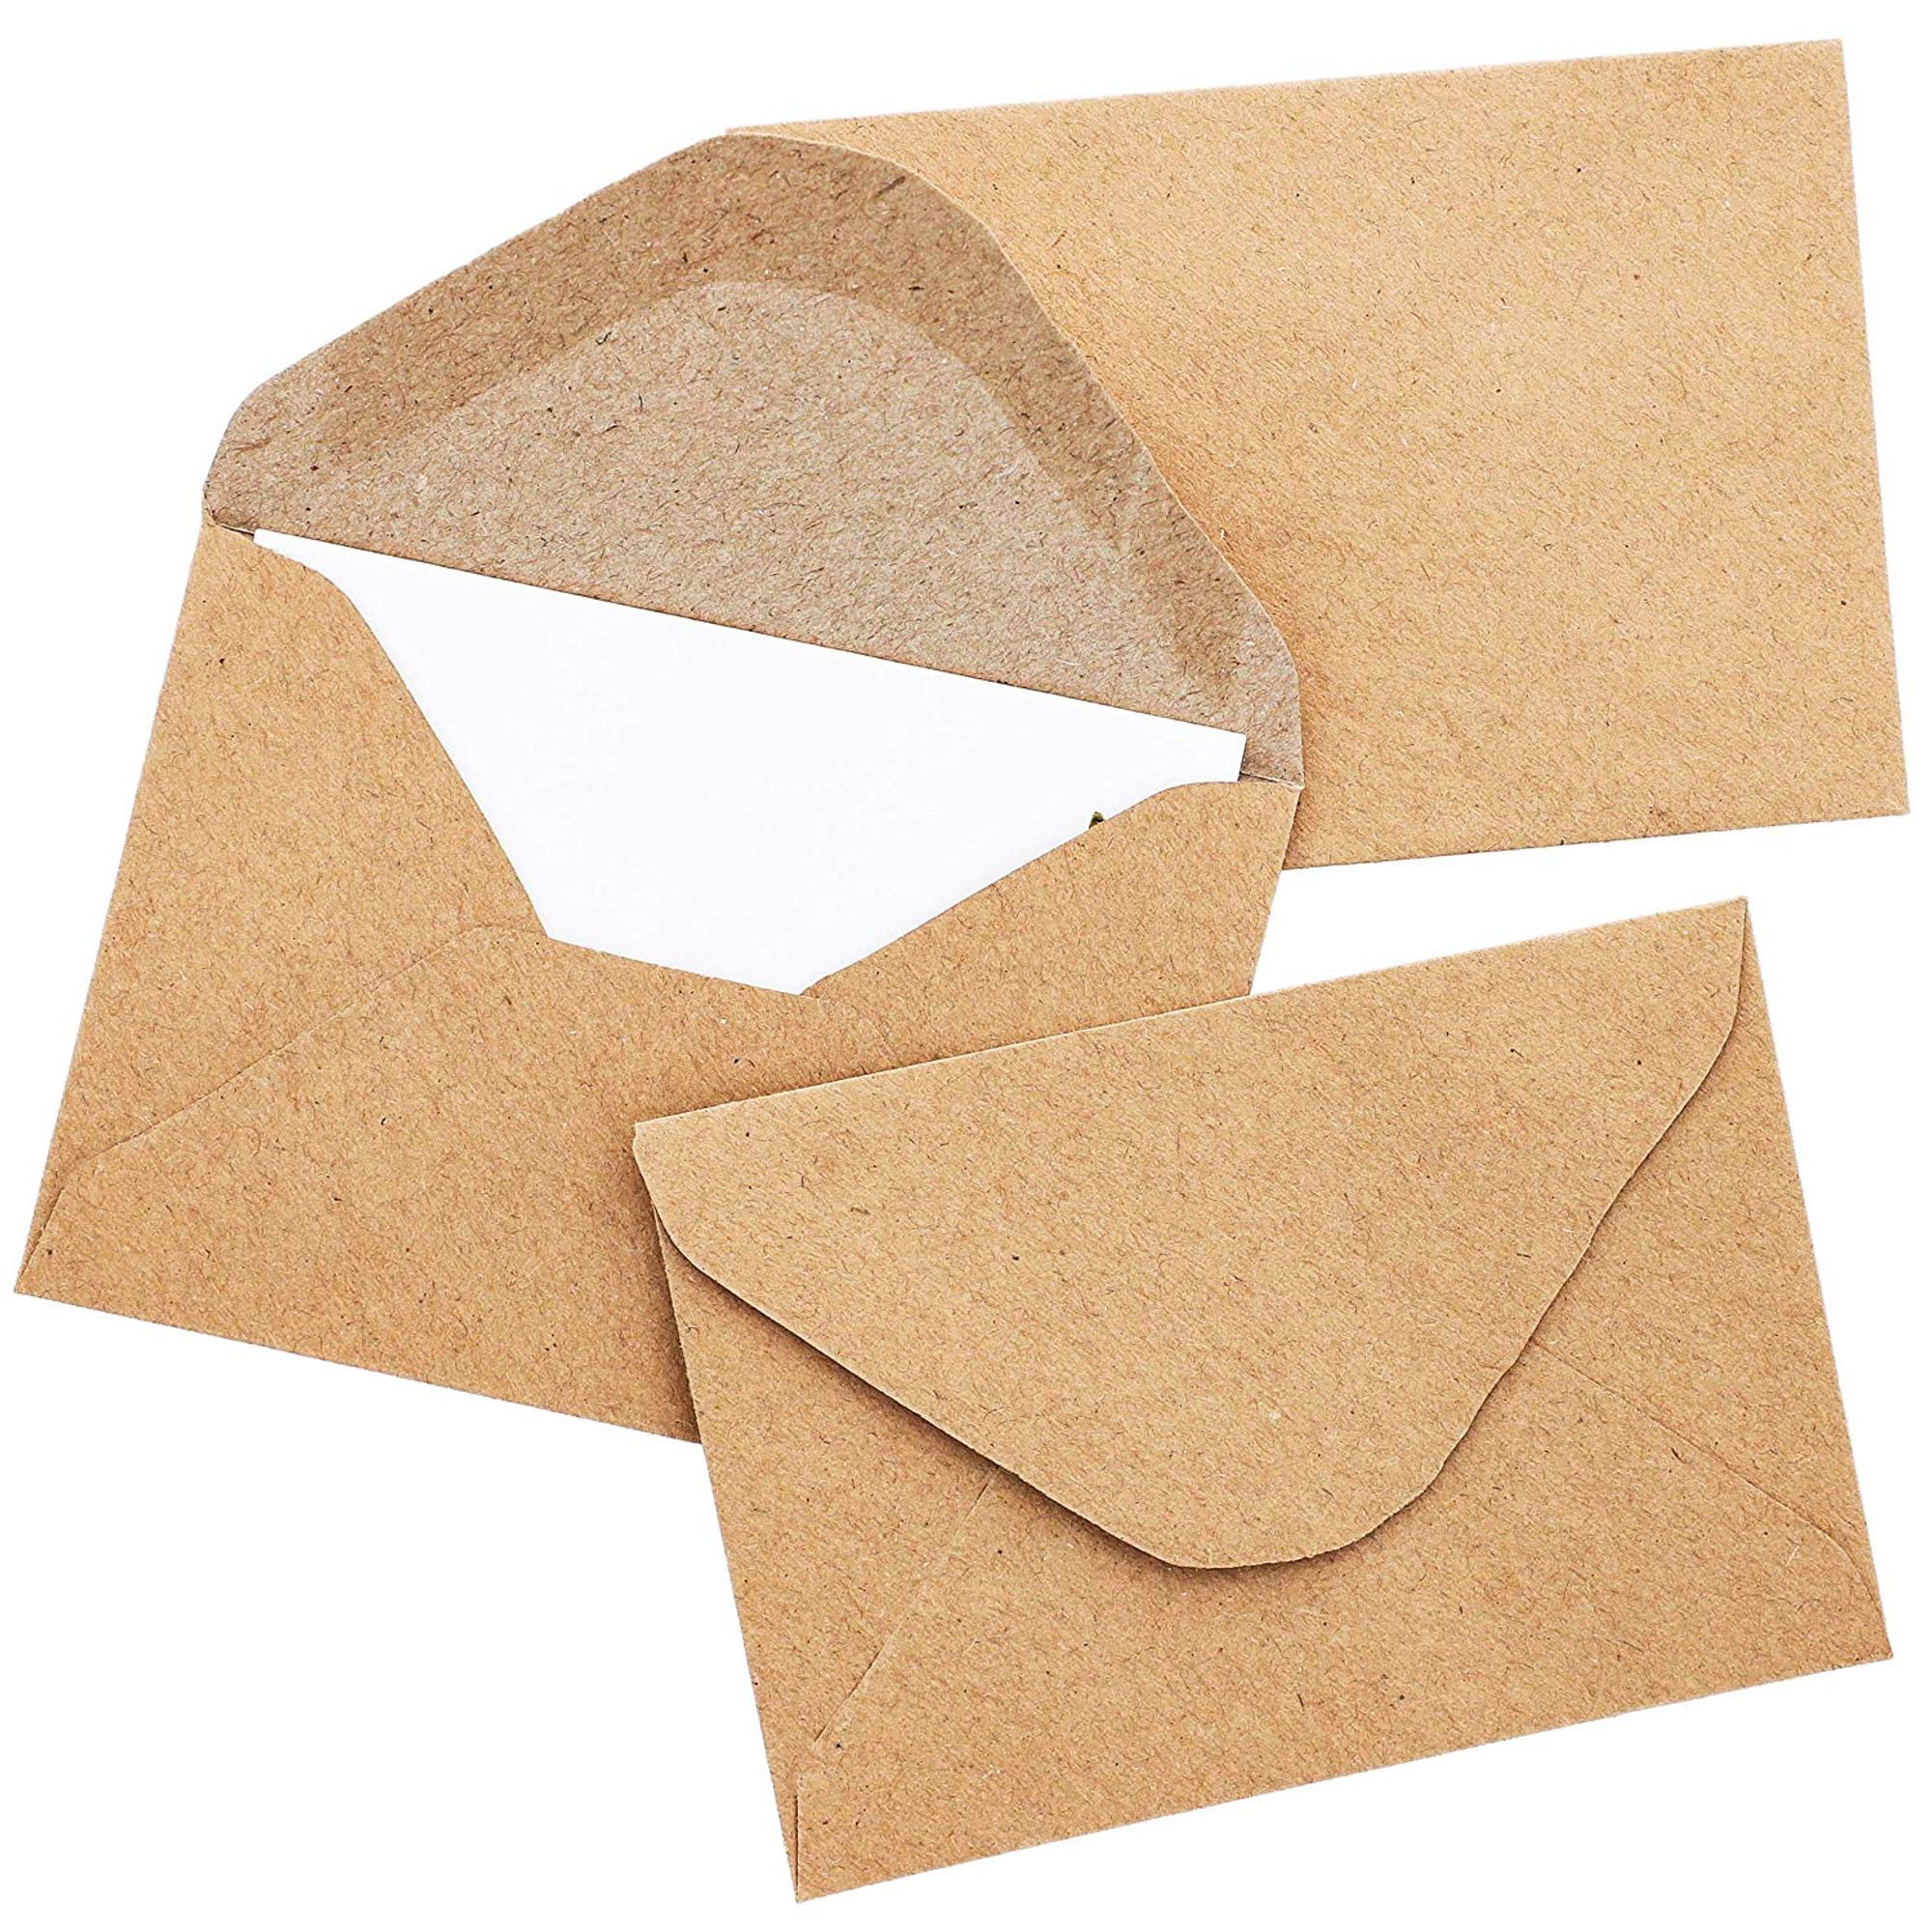 all-occasion-gift-card-envelopes-kraft-envelopes-tiny-gift-card